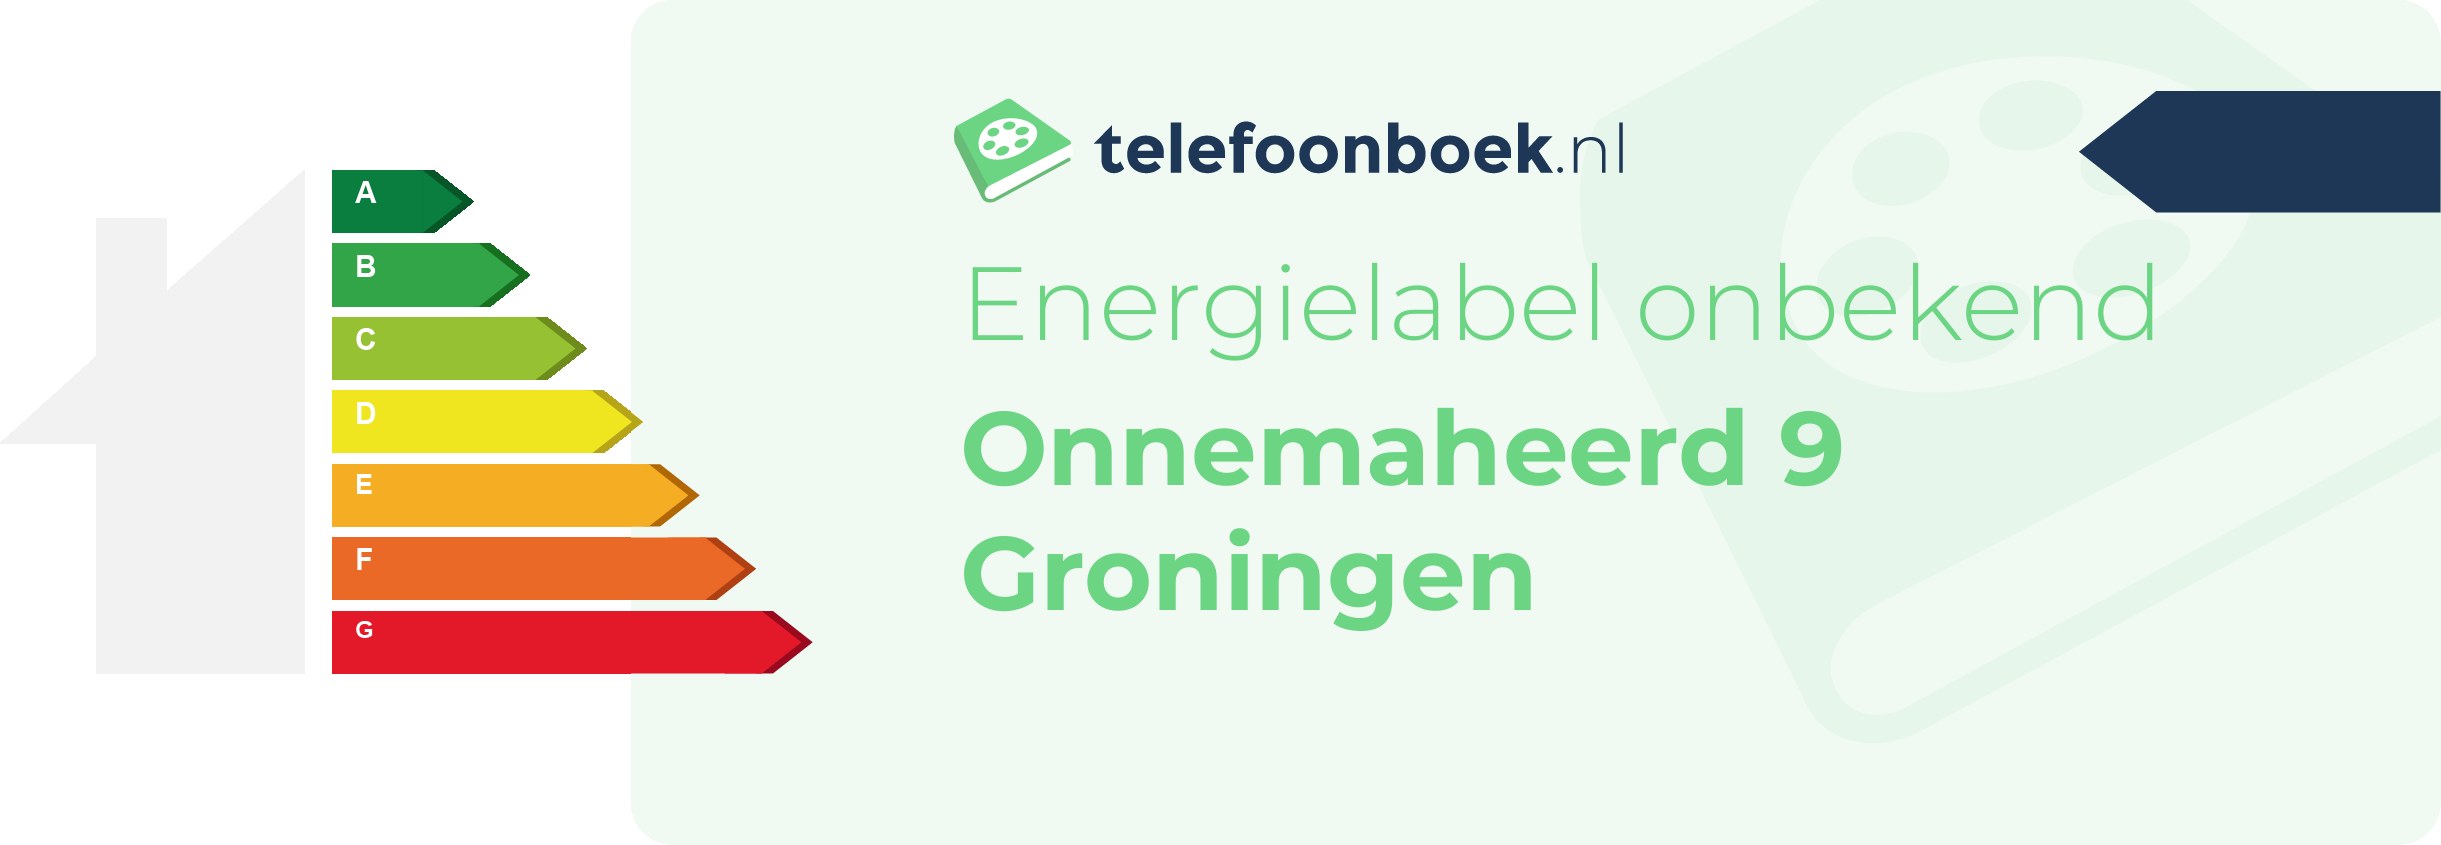 Energielabel Onnemaheerd 9 Groningen